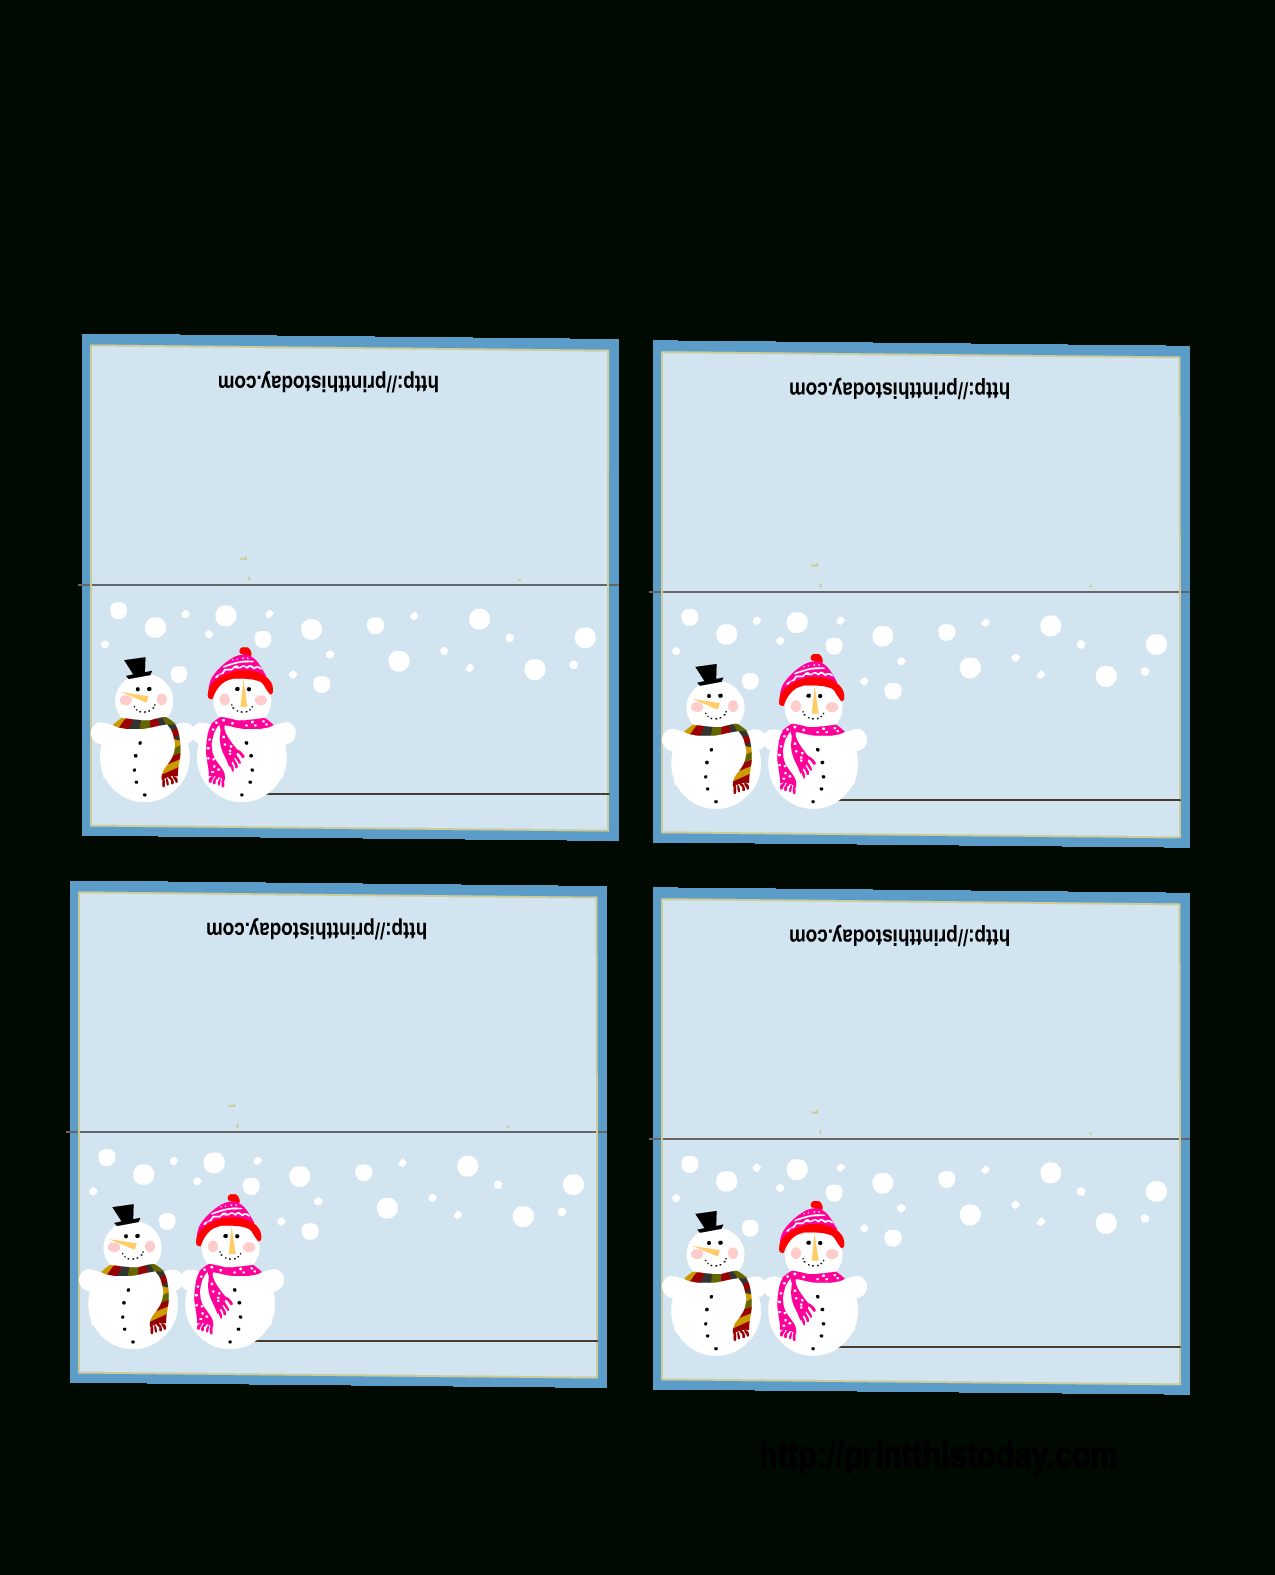 Free Printable Christmas Place Cards Regarding Christmas Table Place Cards Template